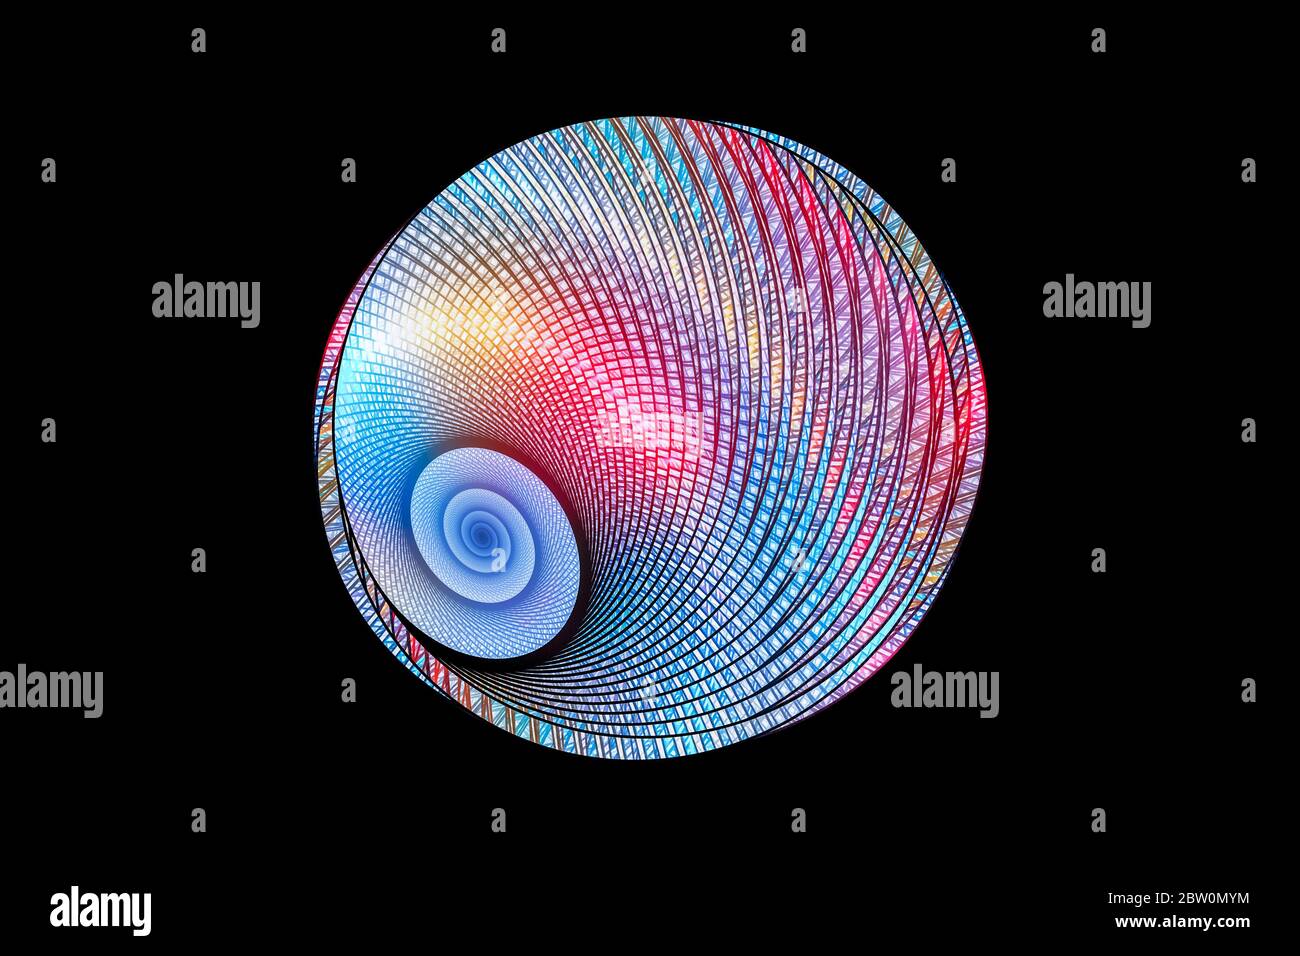 Géométrie fractale en spirale lumineuse colorée isolée sur fond noir, généré par ordinateur, rendu 3D Banque D'Images